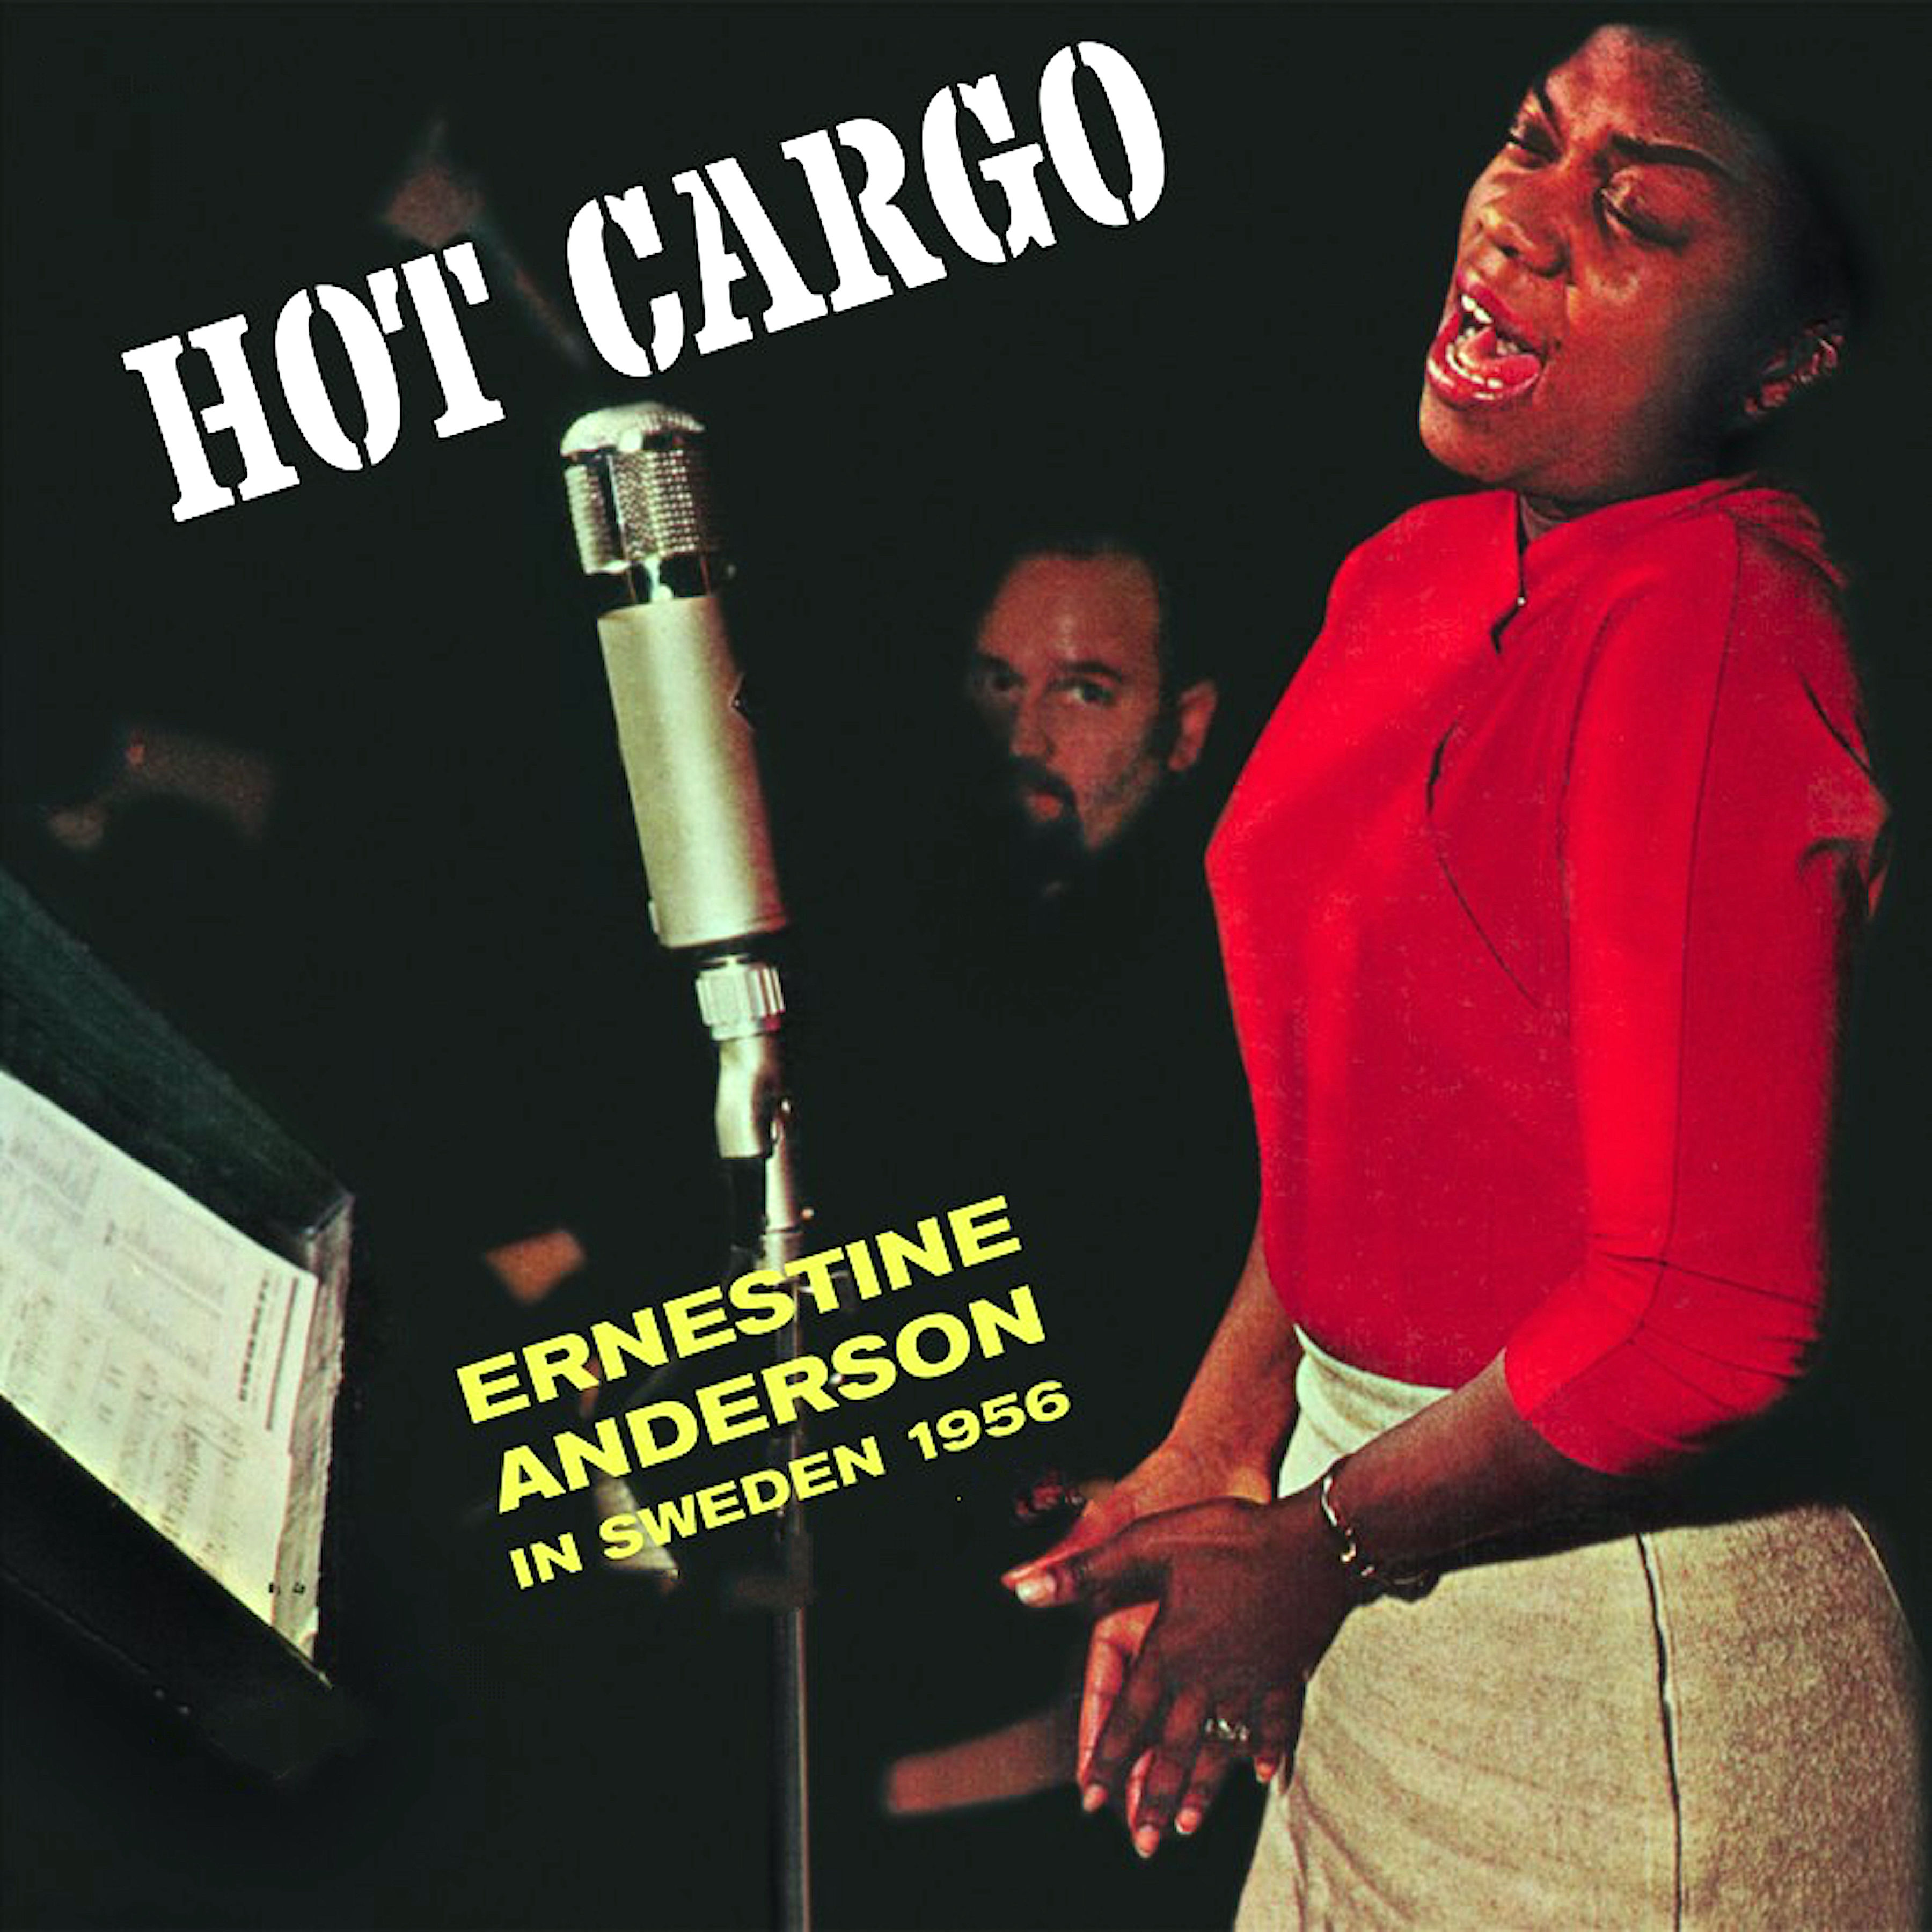 Ernestine Anderson – Hot Cargo – In Sweden 1956 (1956/2021) [FLAC 24bit/96kHz]